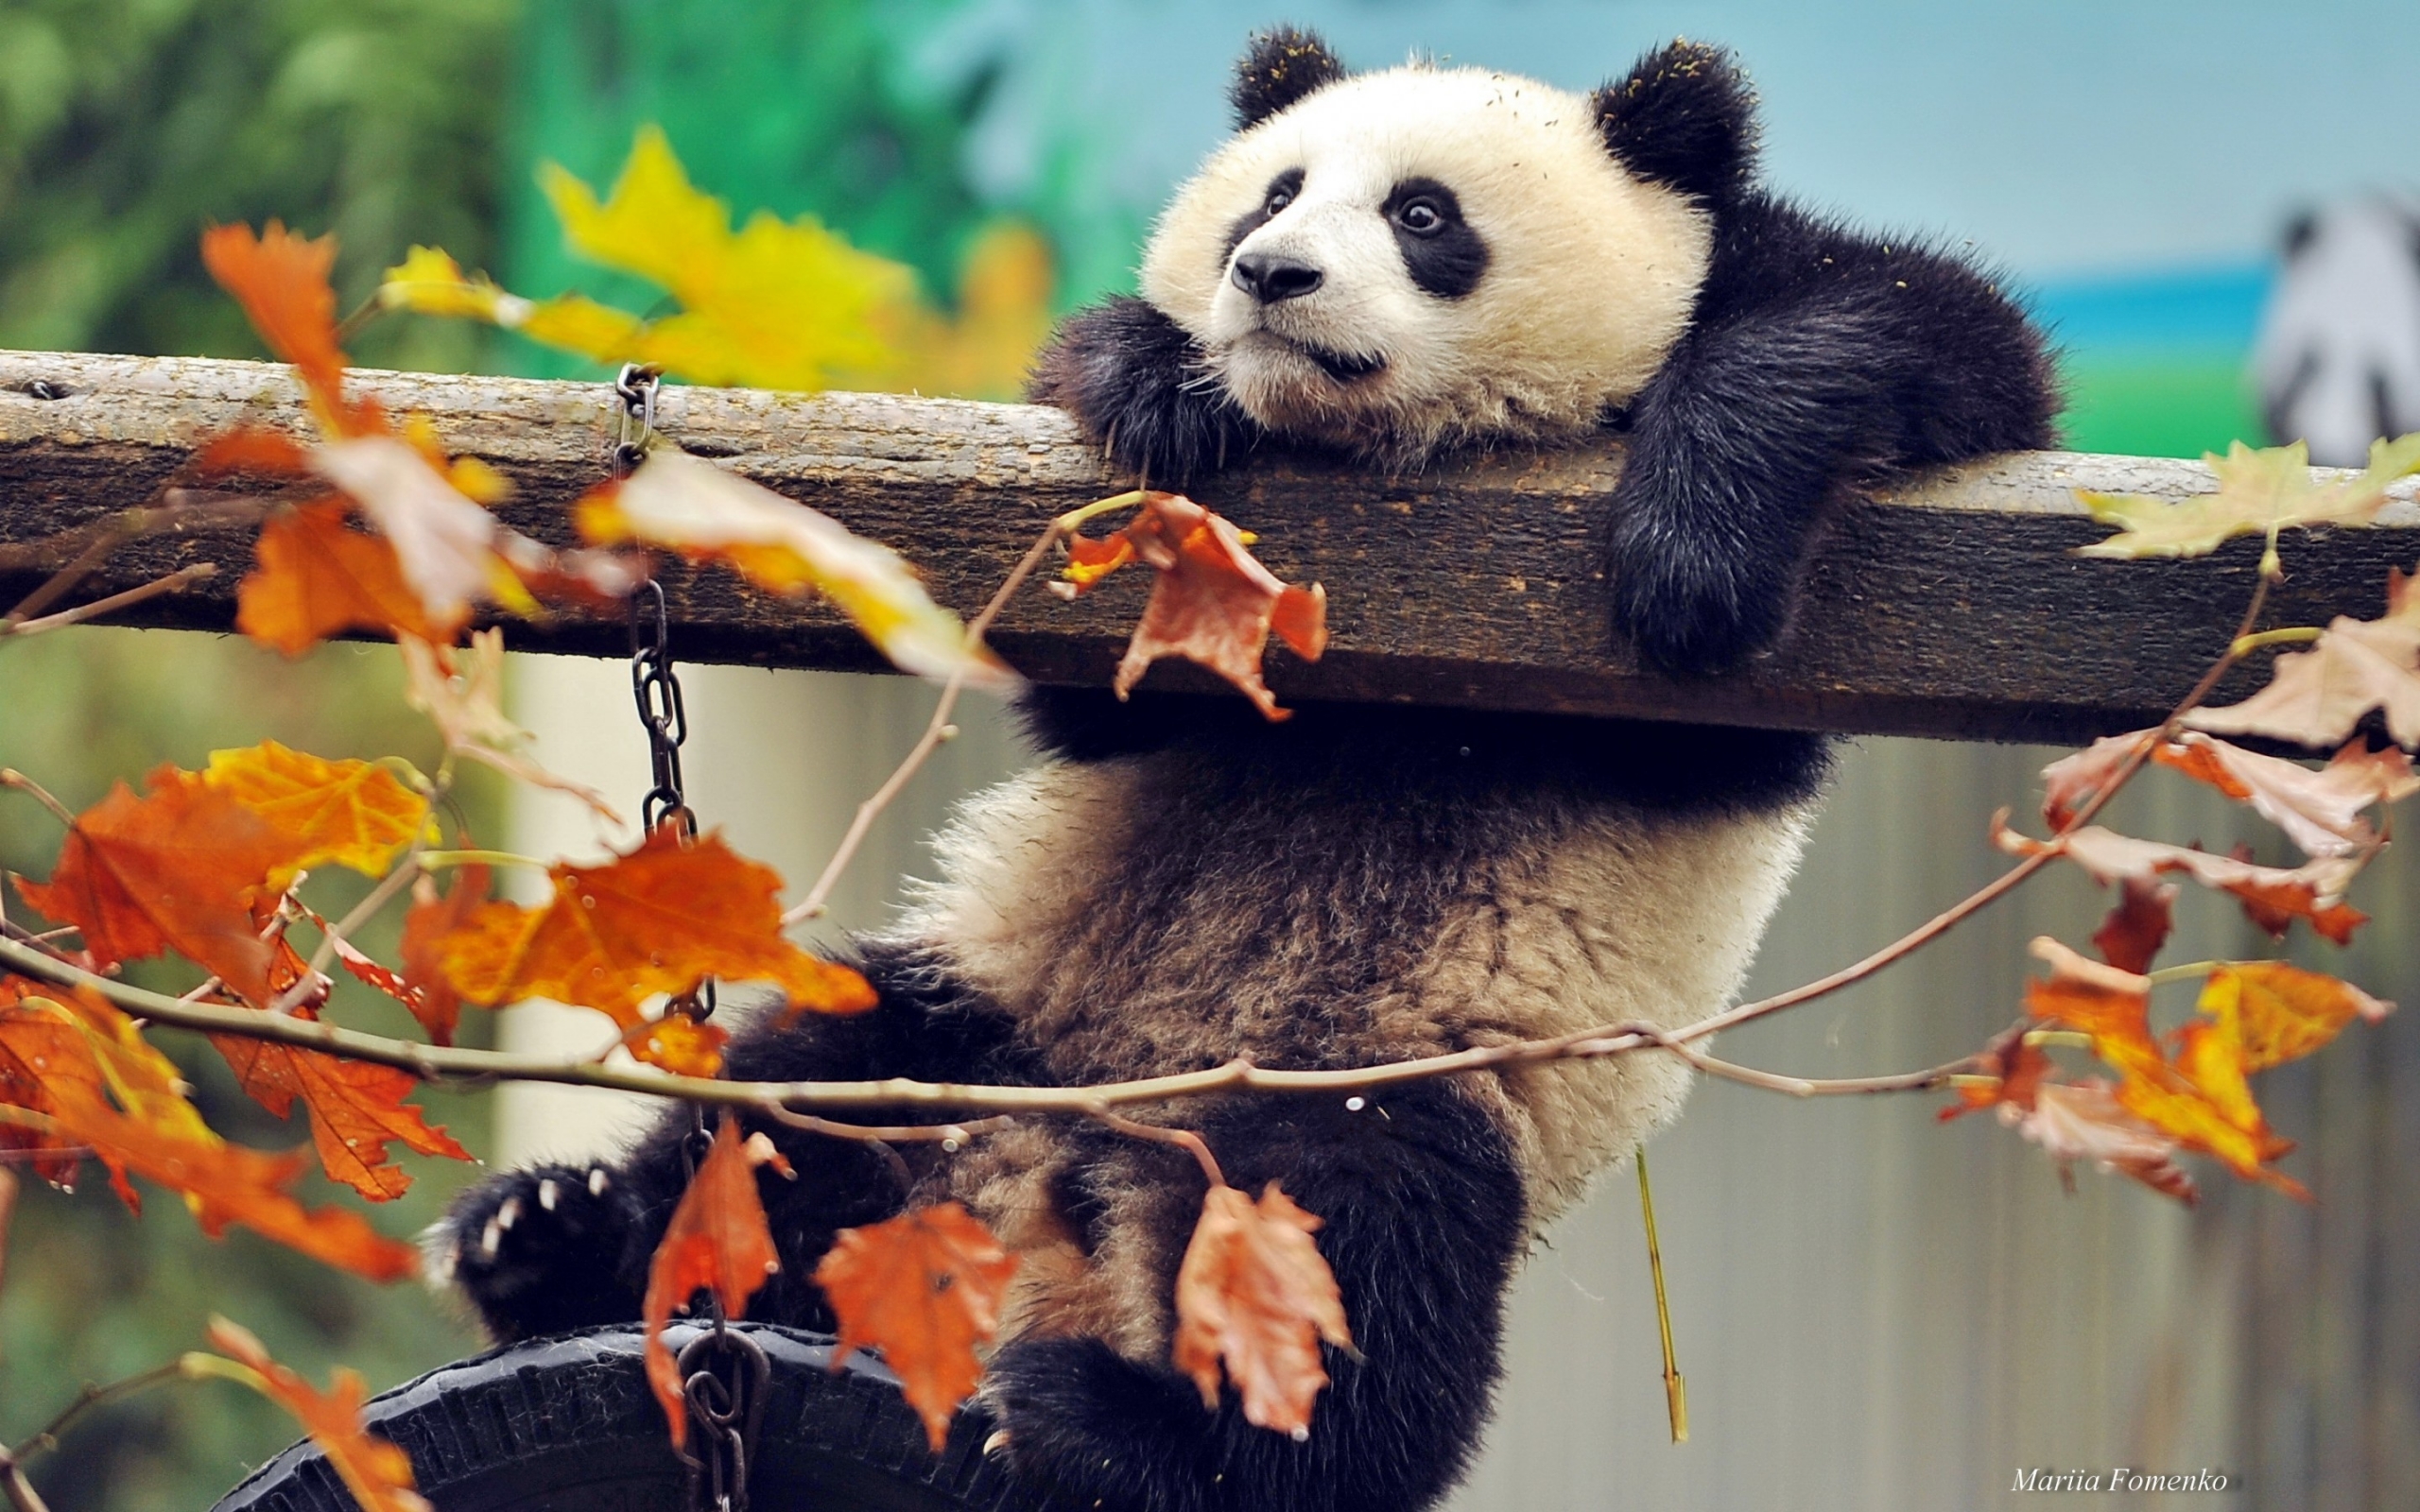 Cute Panda Climbing for 2560 x 1600 widescreen resolution